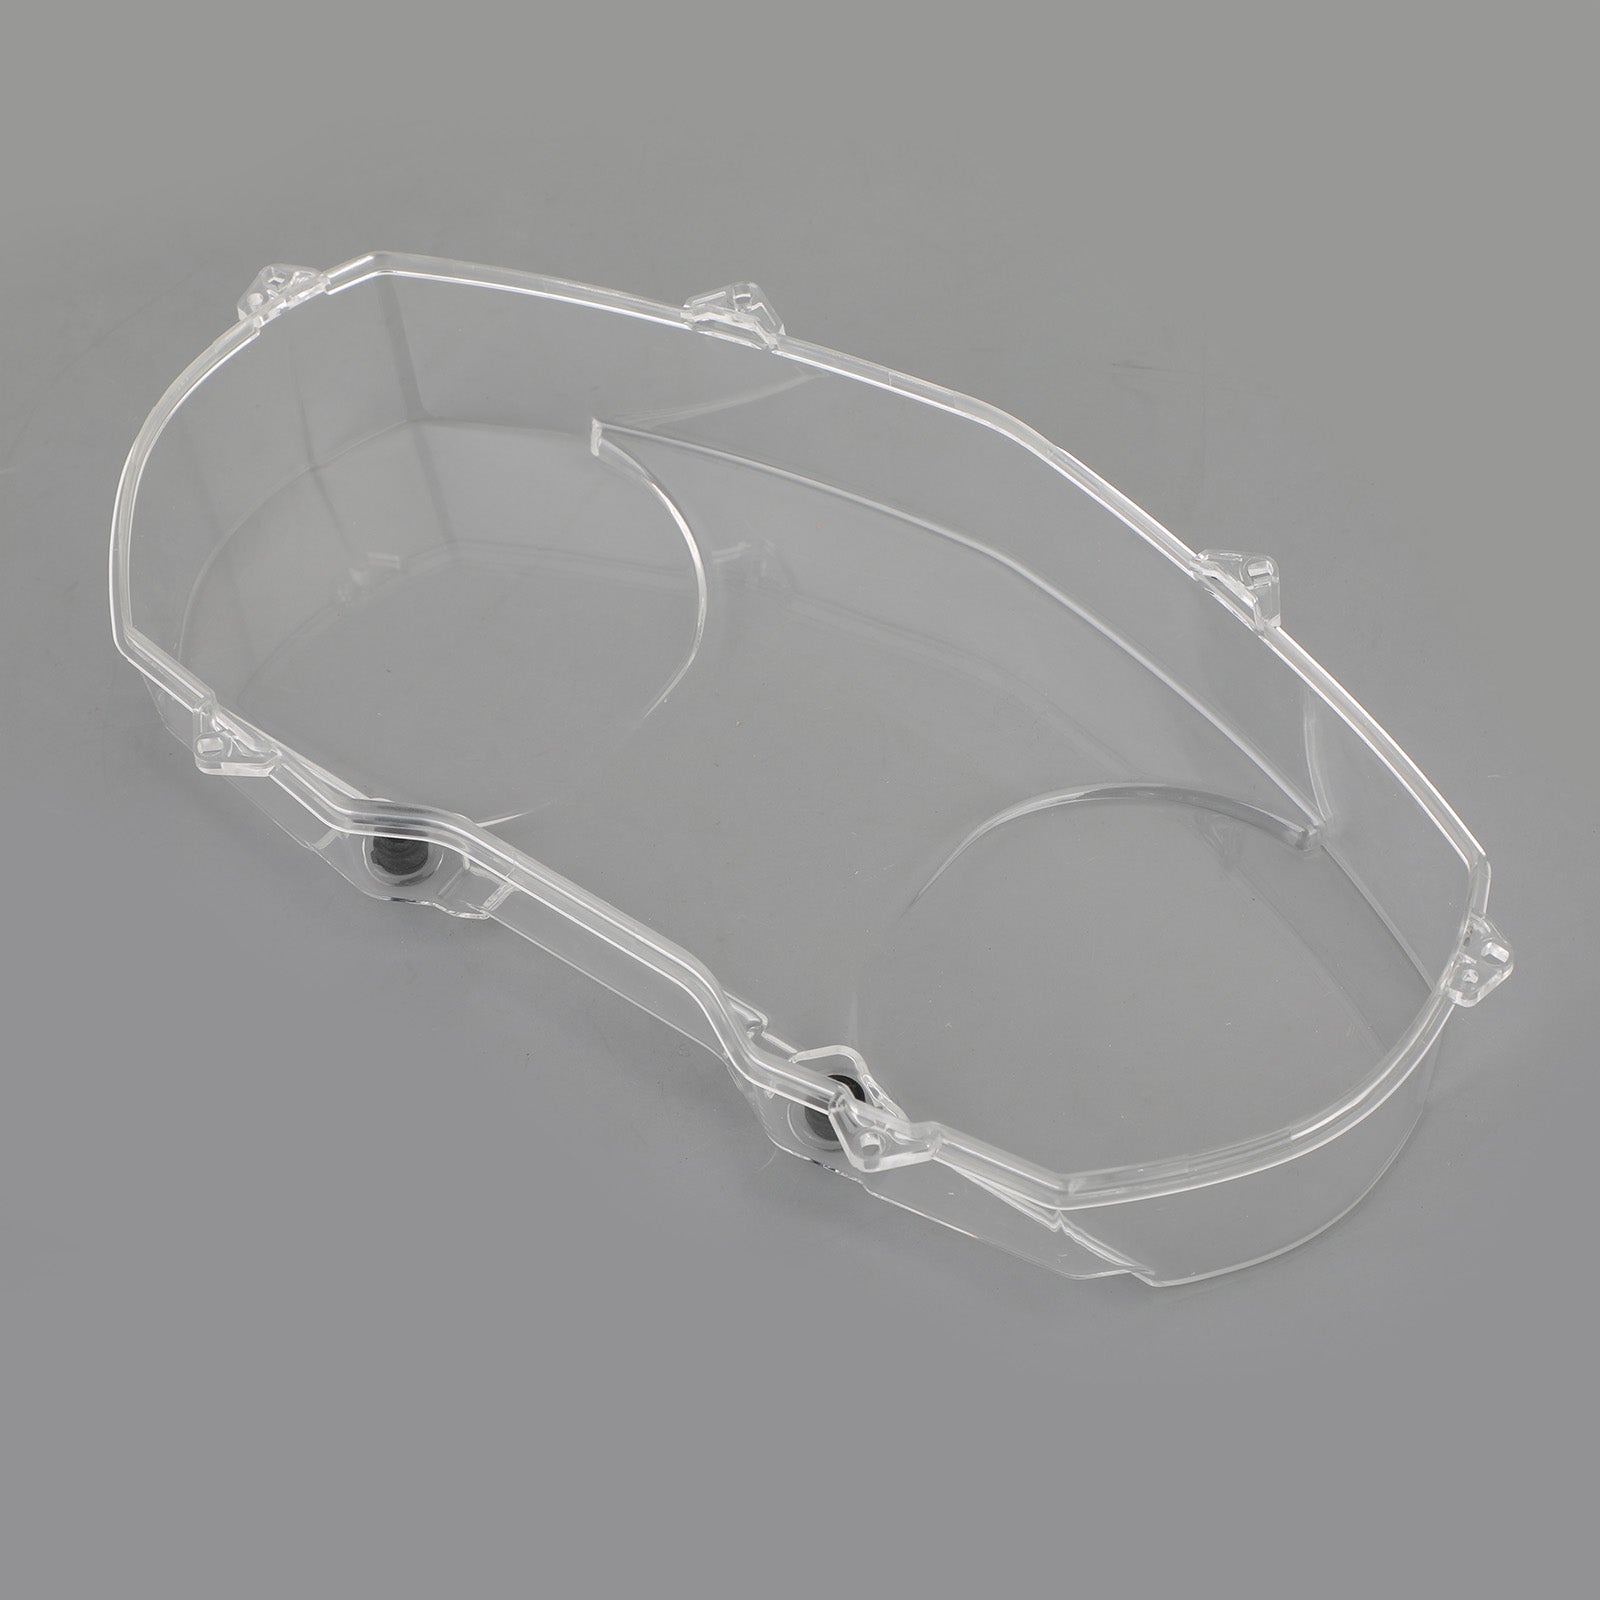 Protector de tapa de velocímetro transparente para BMW R1200RT 2005-2009 genérico